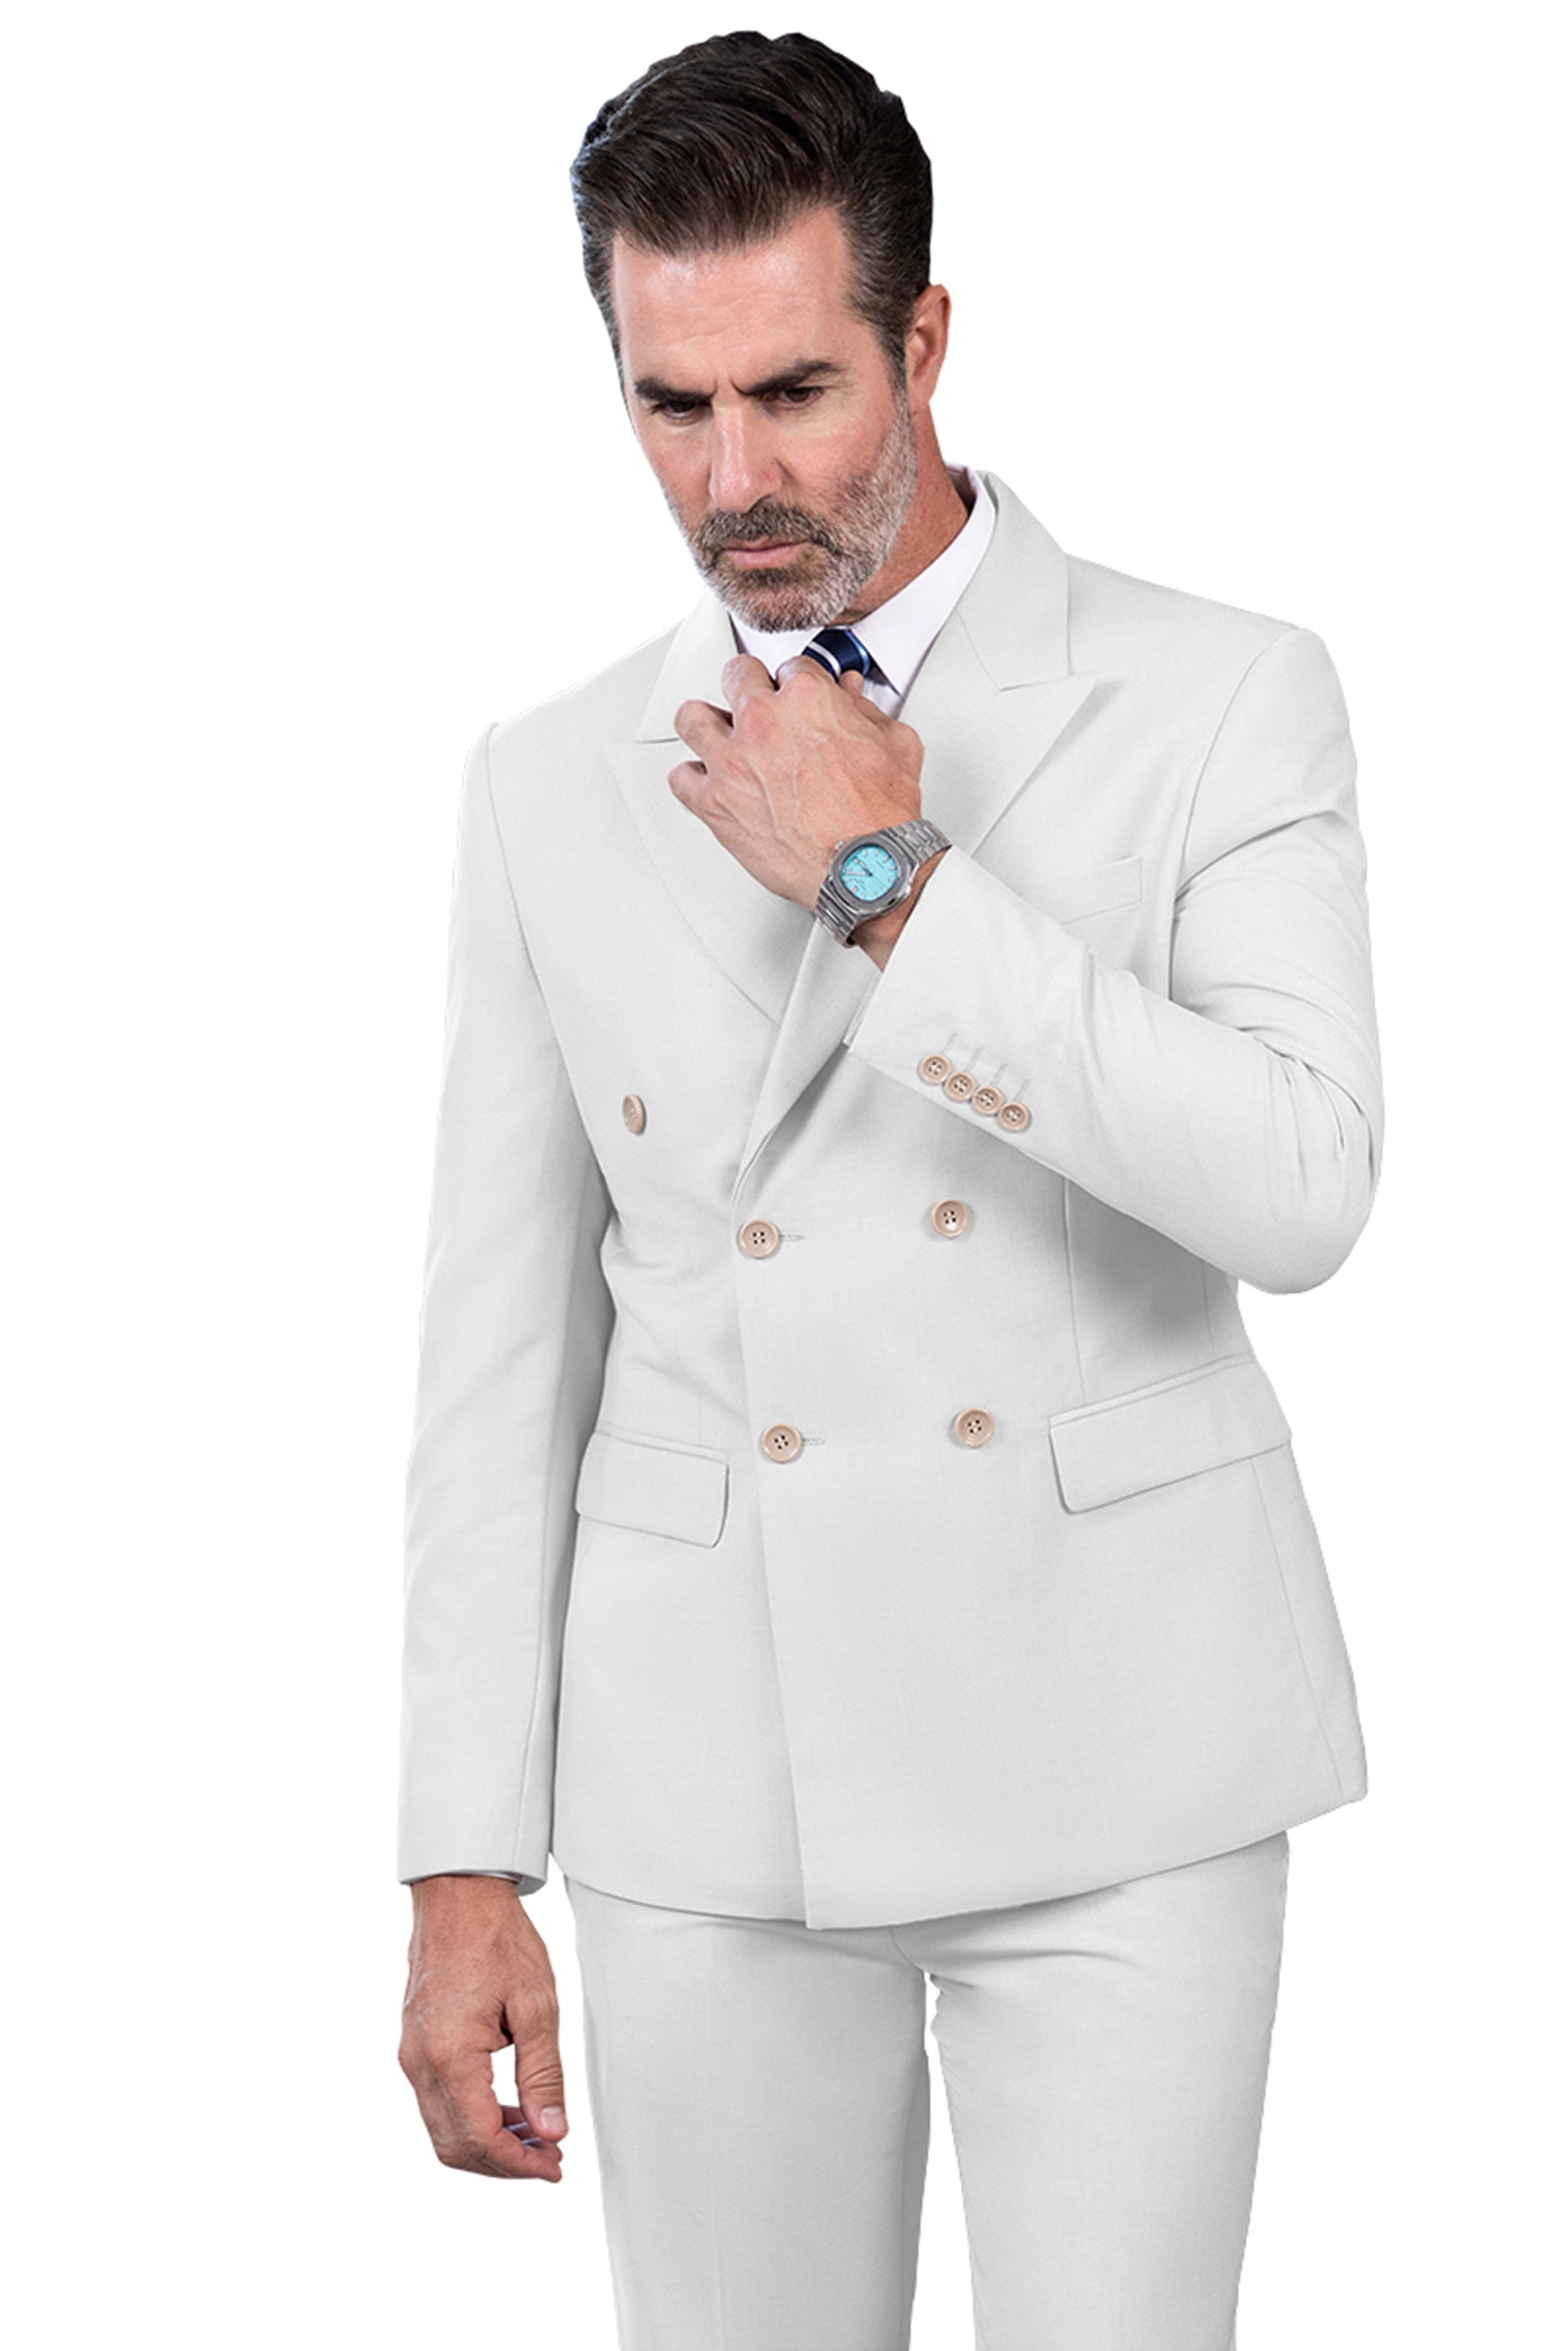 ceehuteey 2 Pieces Men's Regular Peak Lapel  Solid suit (Blazer+Pants)